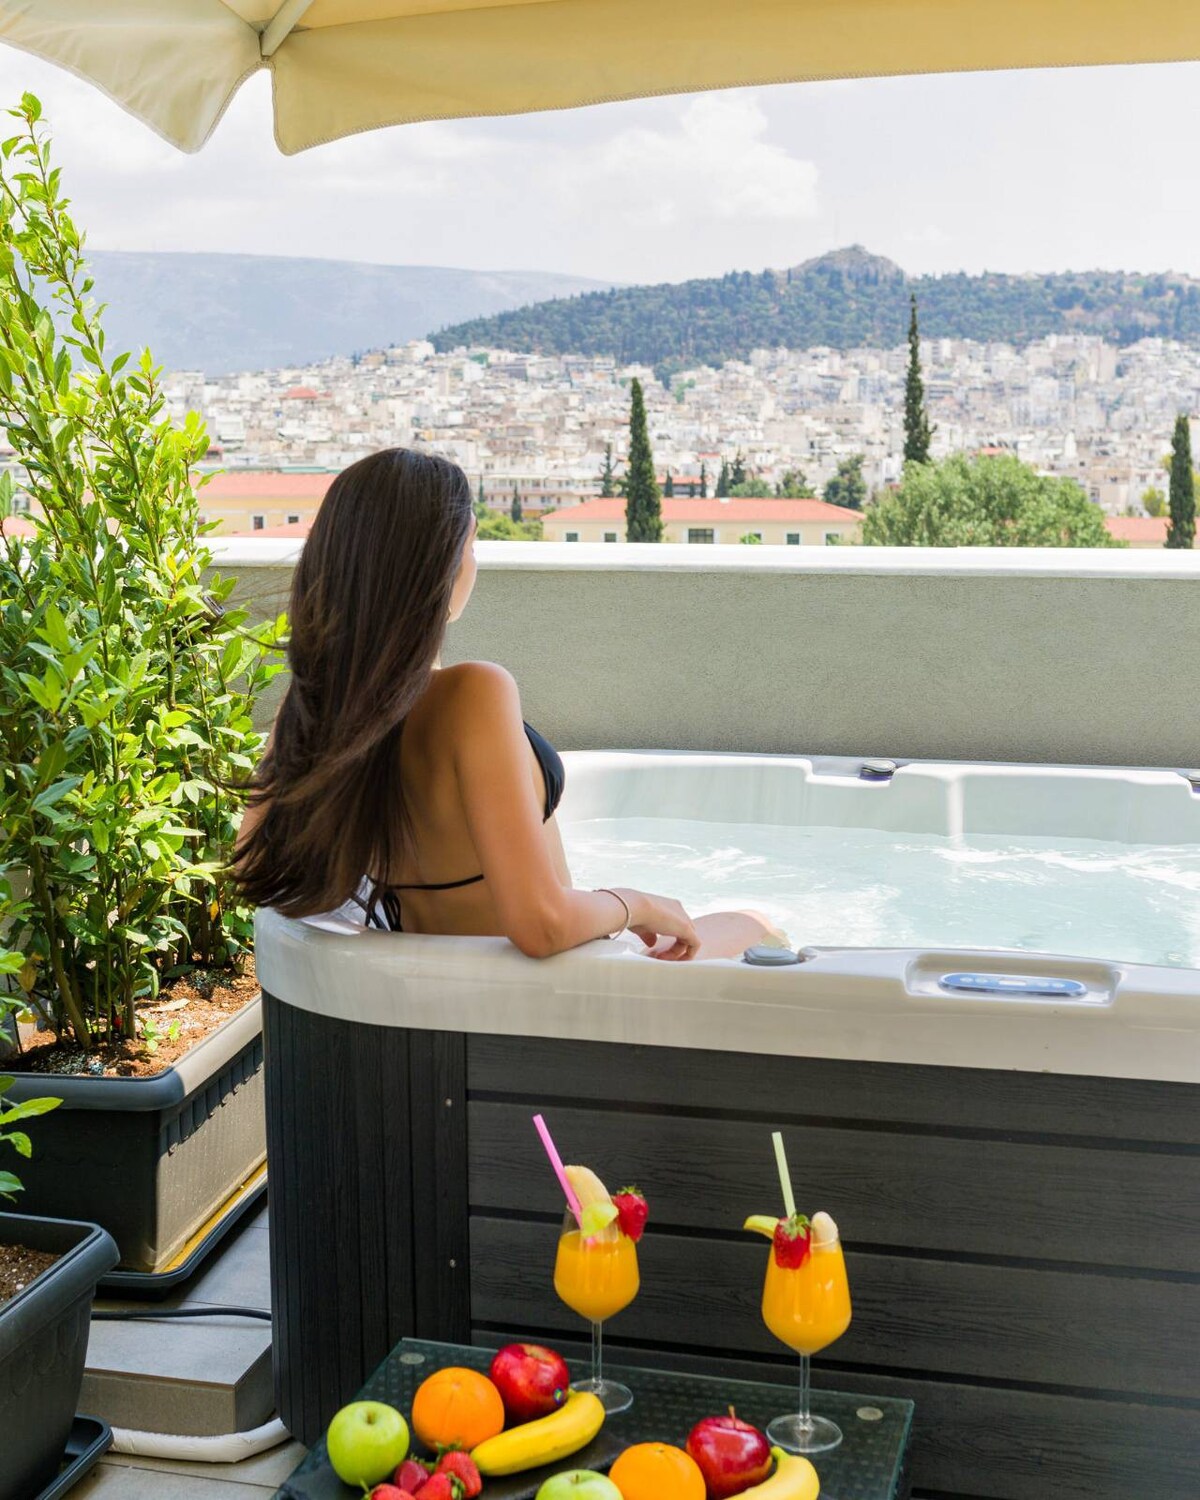 雅典卫城景观热水户外按摩浴缸复式公寓